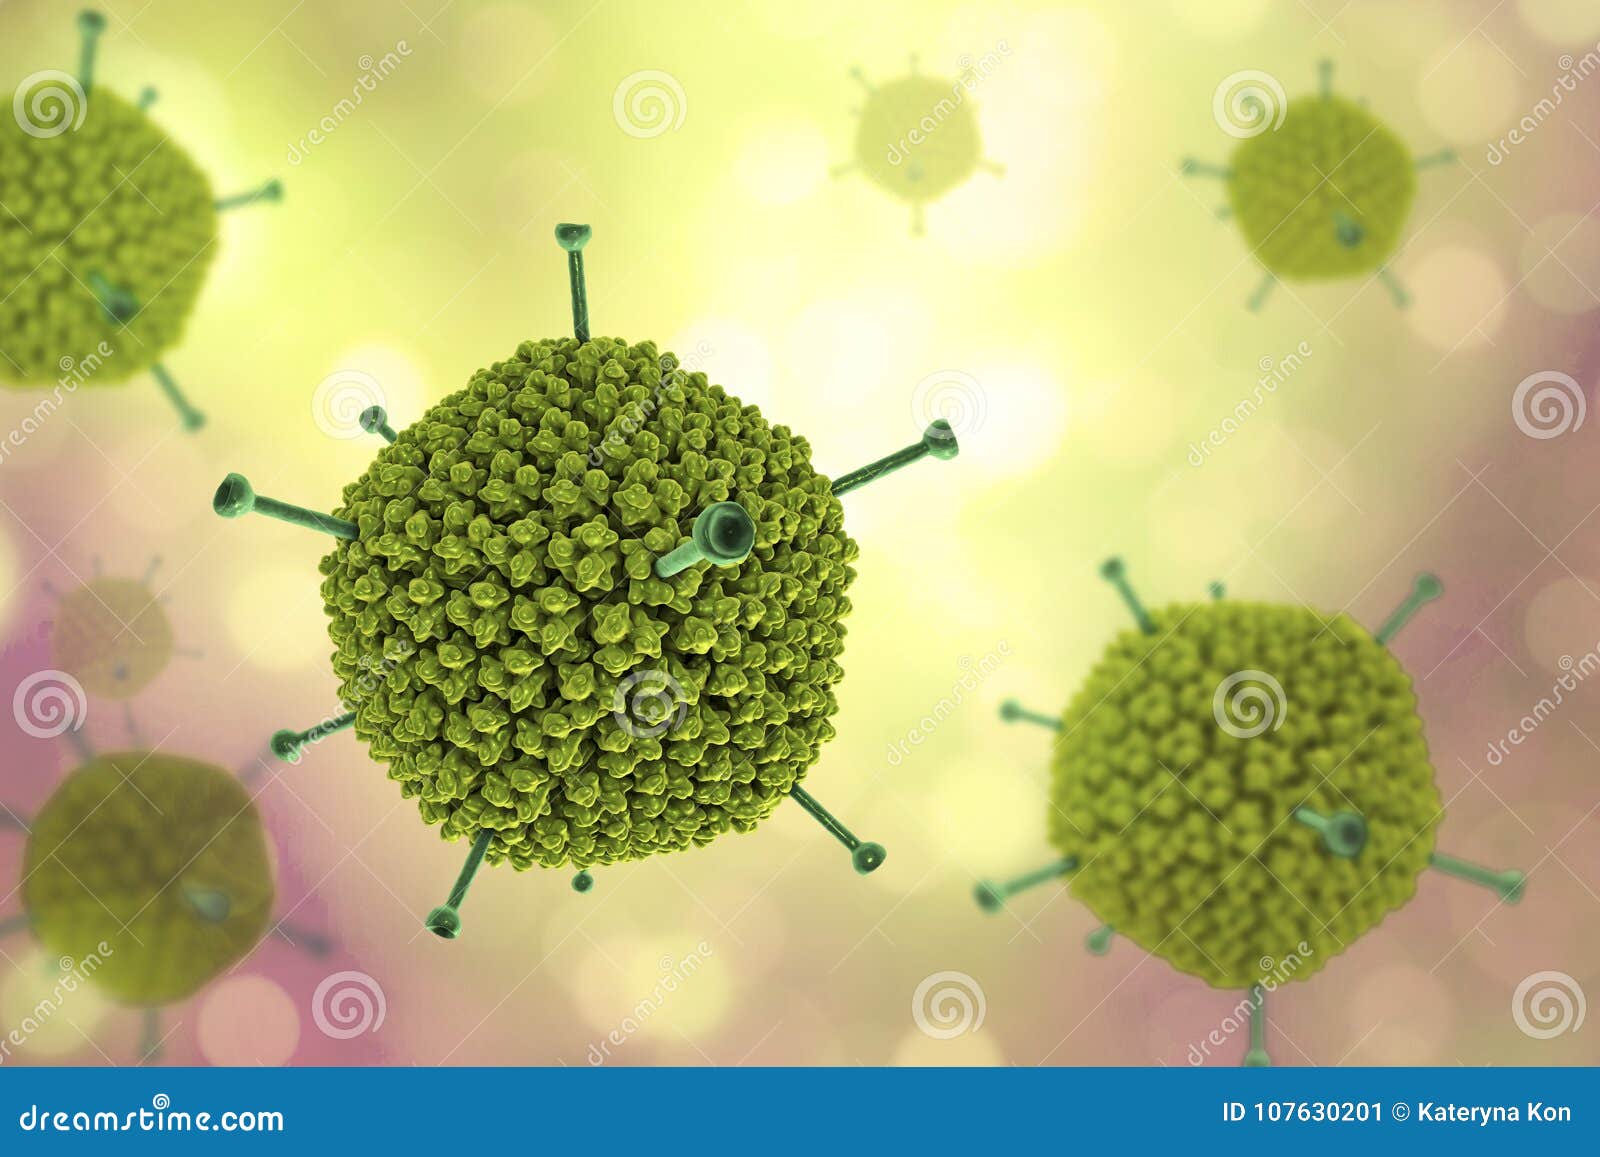 molecular model of adenovirus